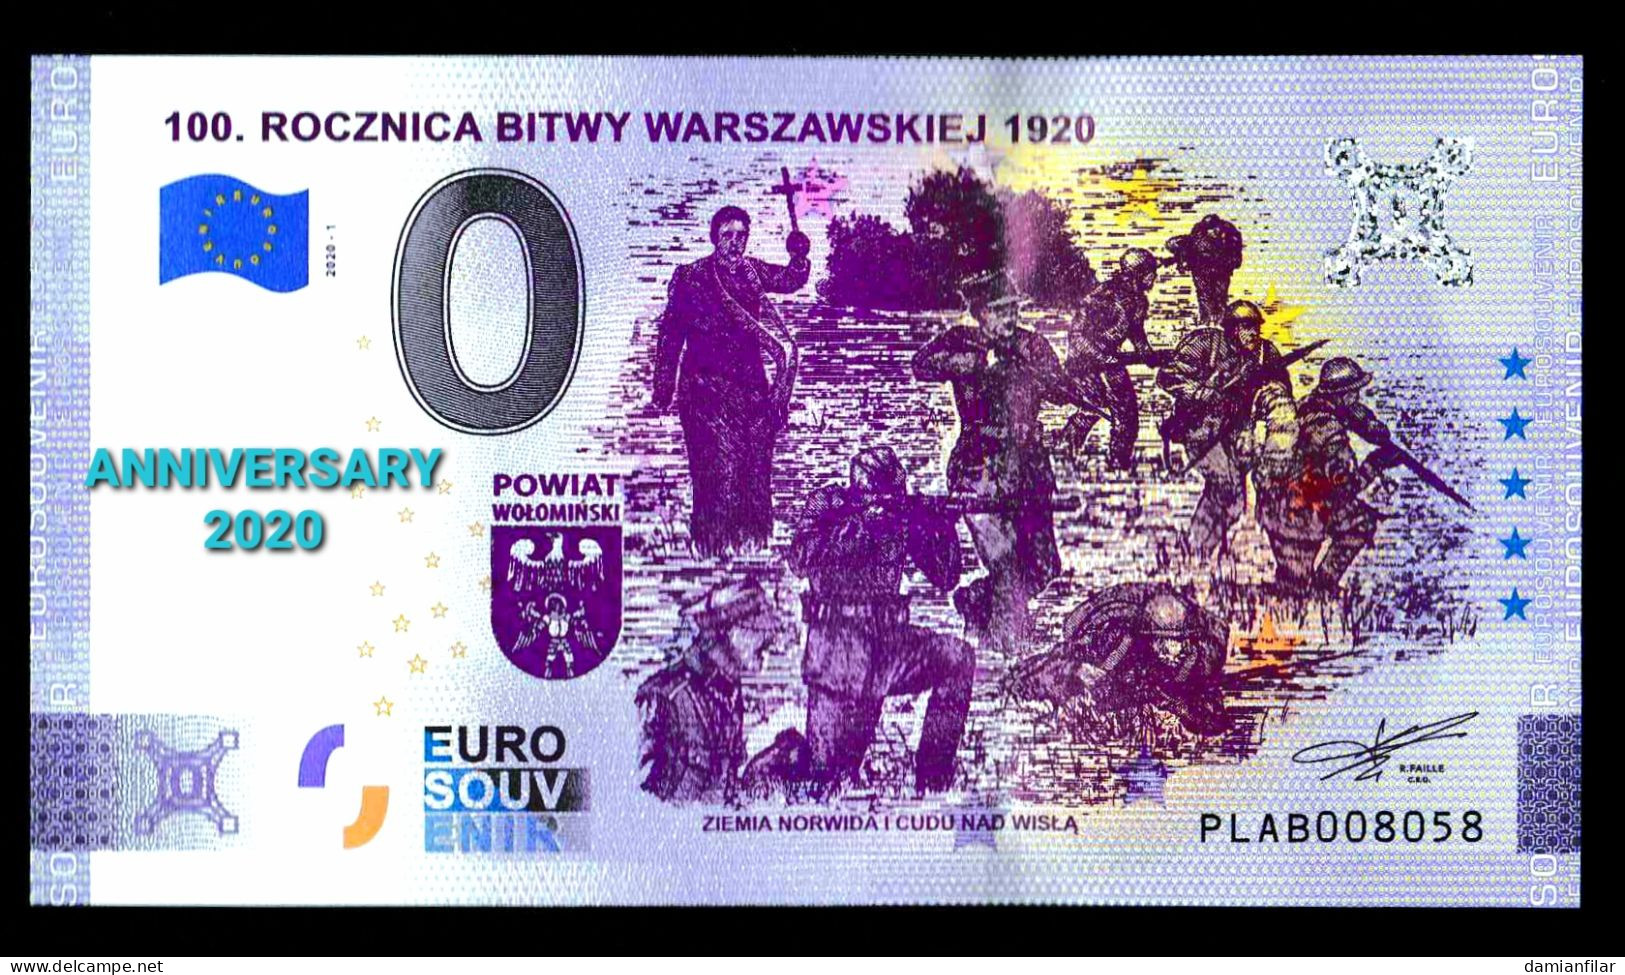 0 euro Souvenir Rocznica bitwy warszawskiej  ANNIVERSARY Poland PLAB 	2020-1